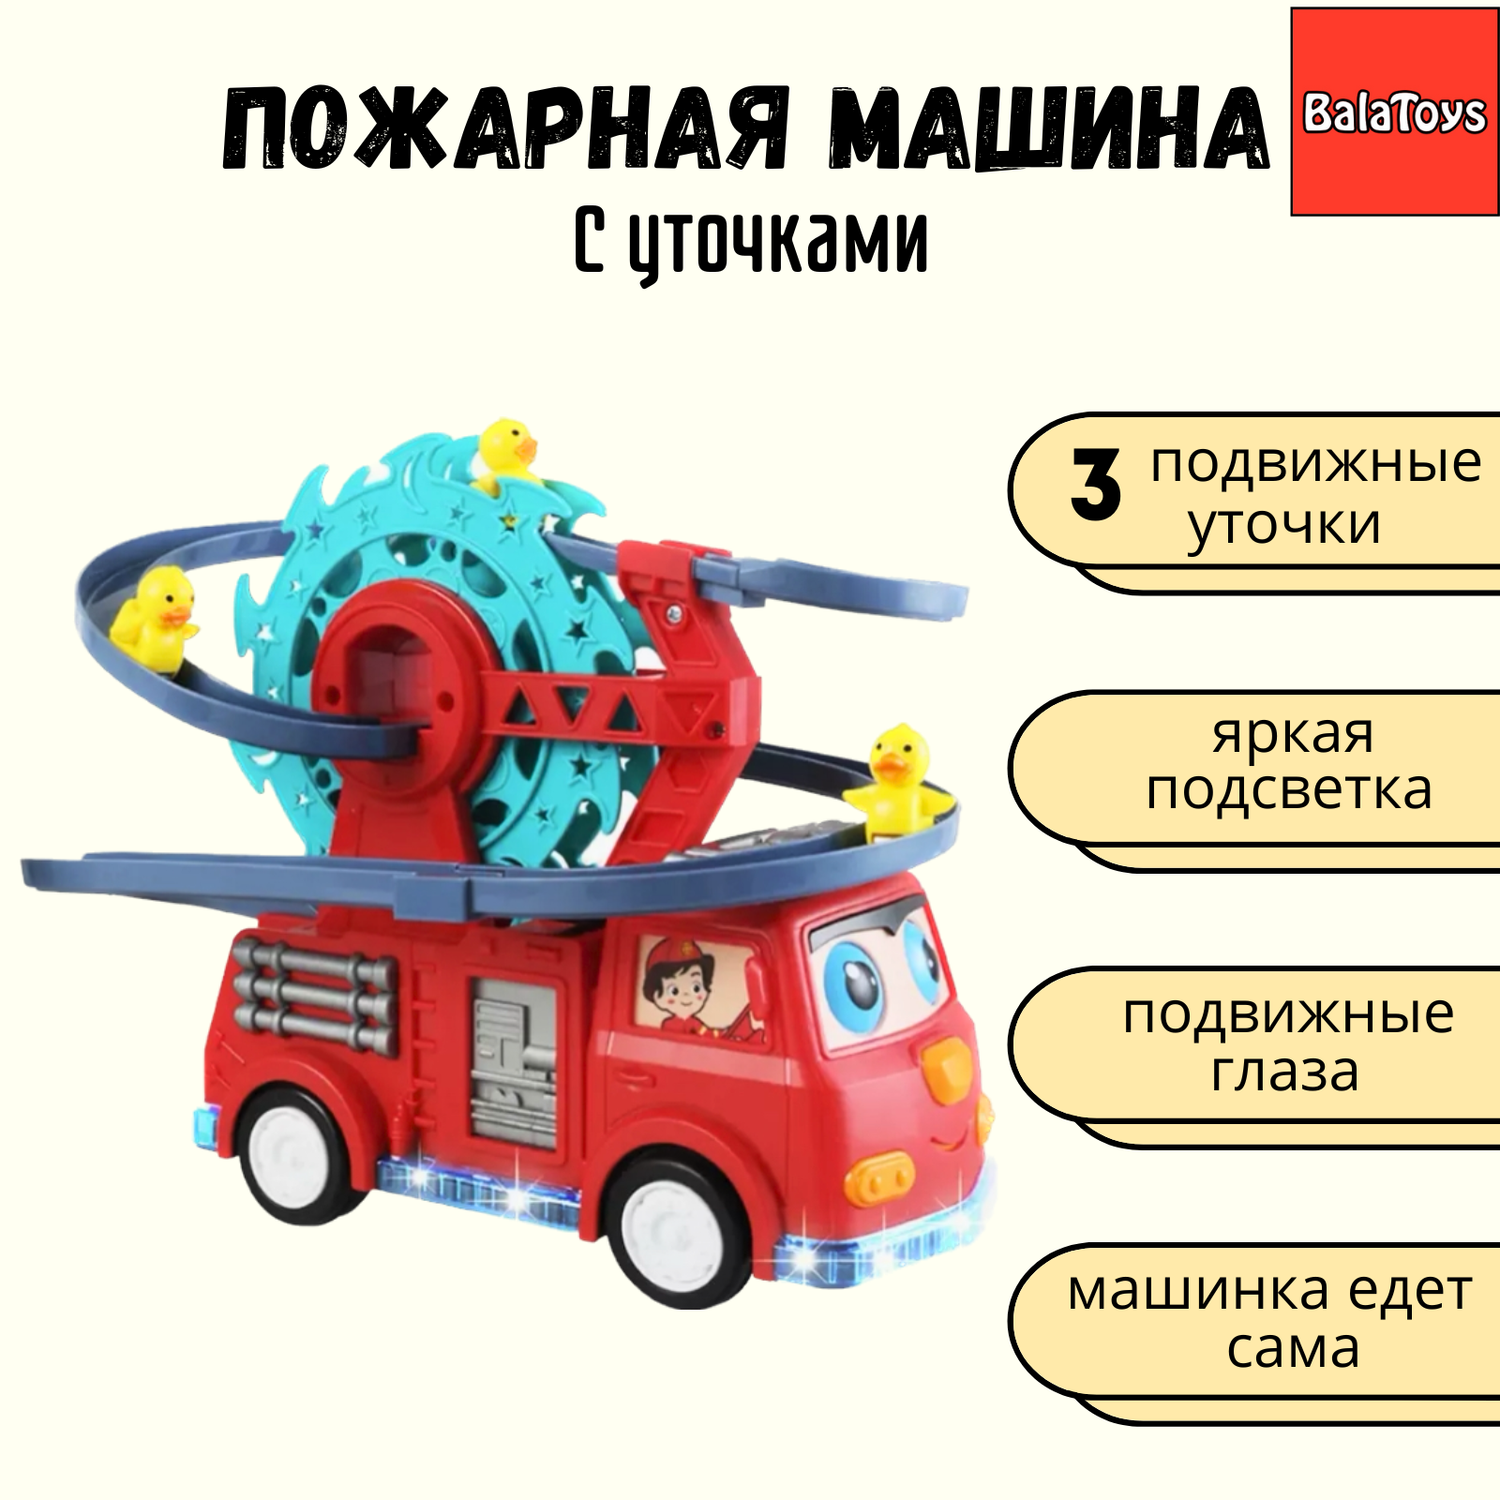 Бегающие утята машина пожарная BalaToys интерактивная игрушка - фото 1